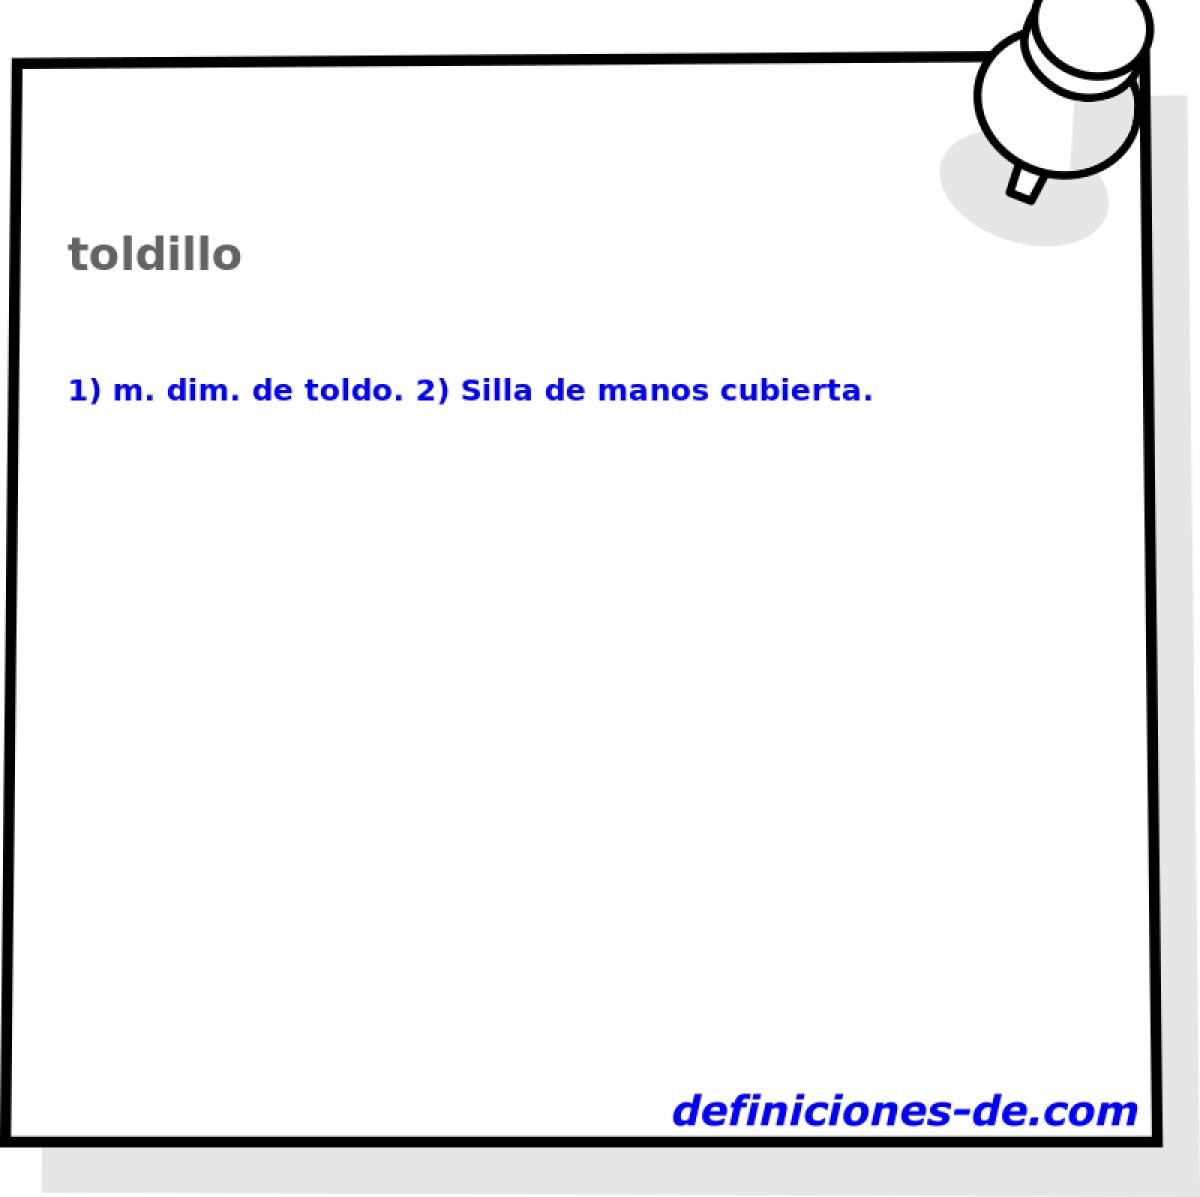 toldillo 